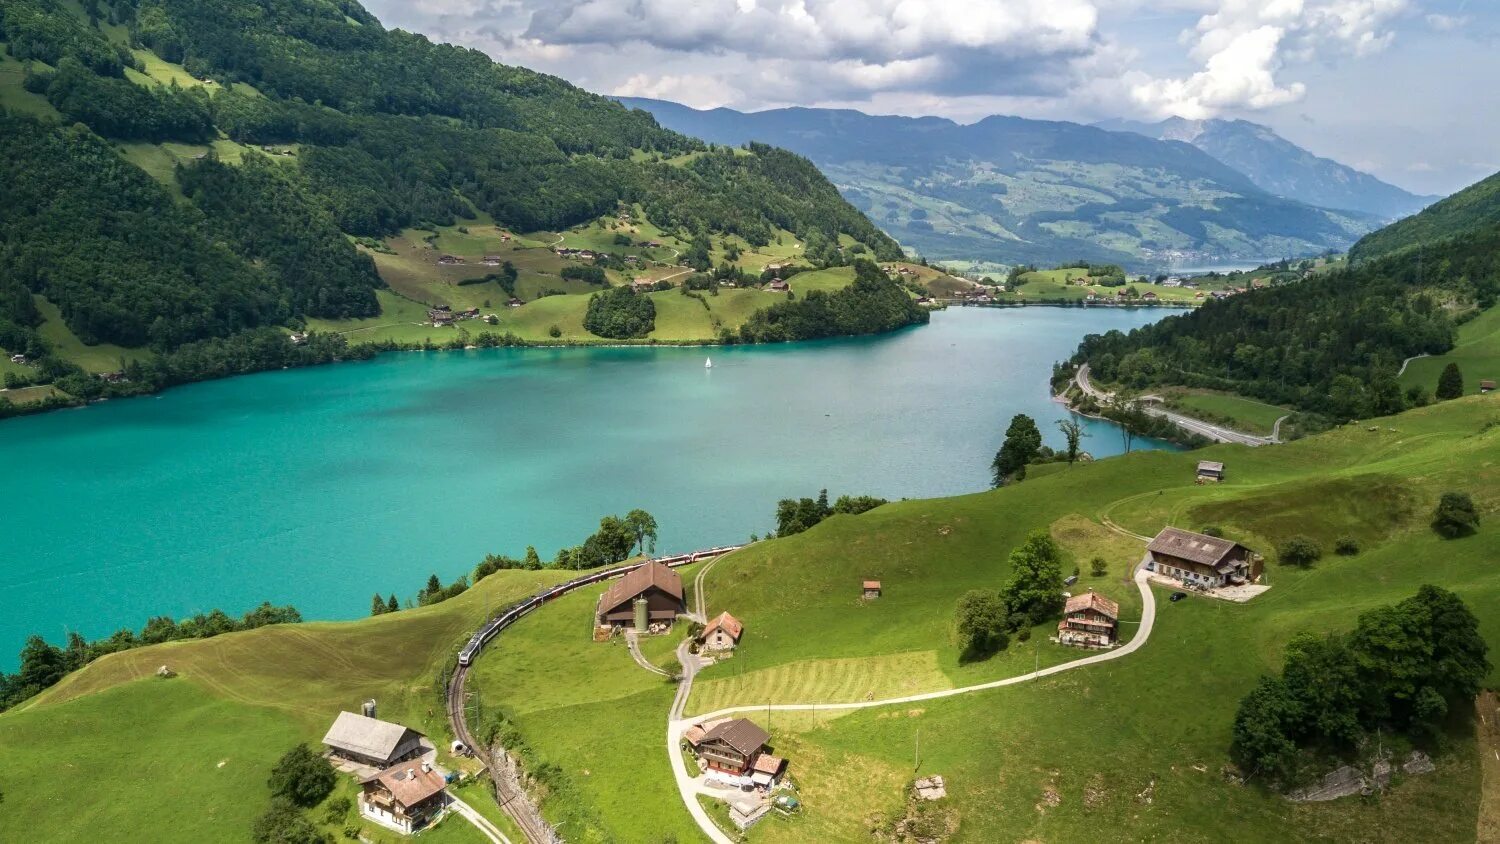 Das schweiz. Озеро Лунгерн Швейцария. Бриенцское озеро Швейцария. Озеро Лунгерер в Швейцарии. Лунгерн Швейцария достопримечательности.